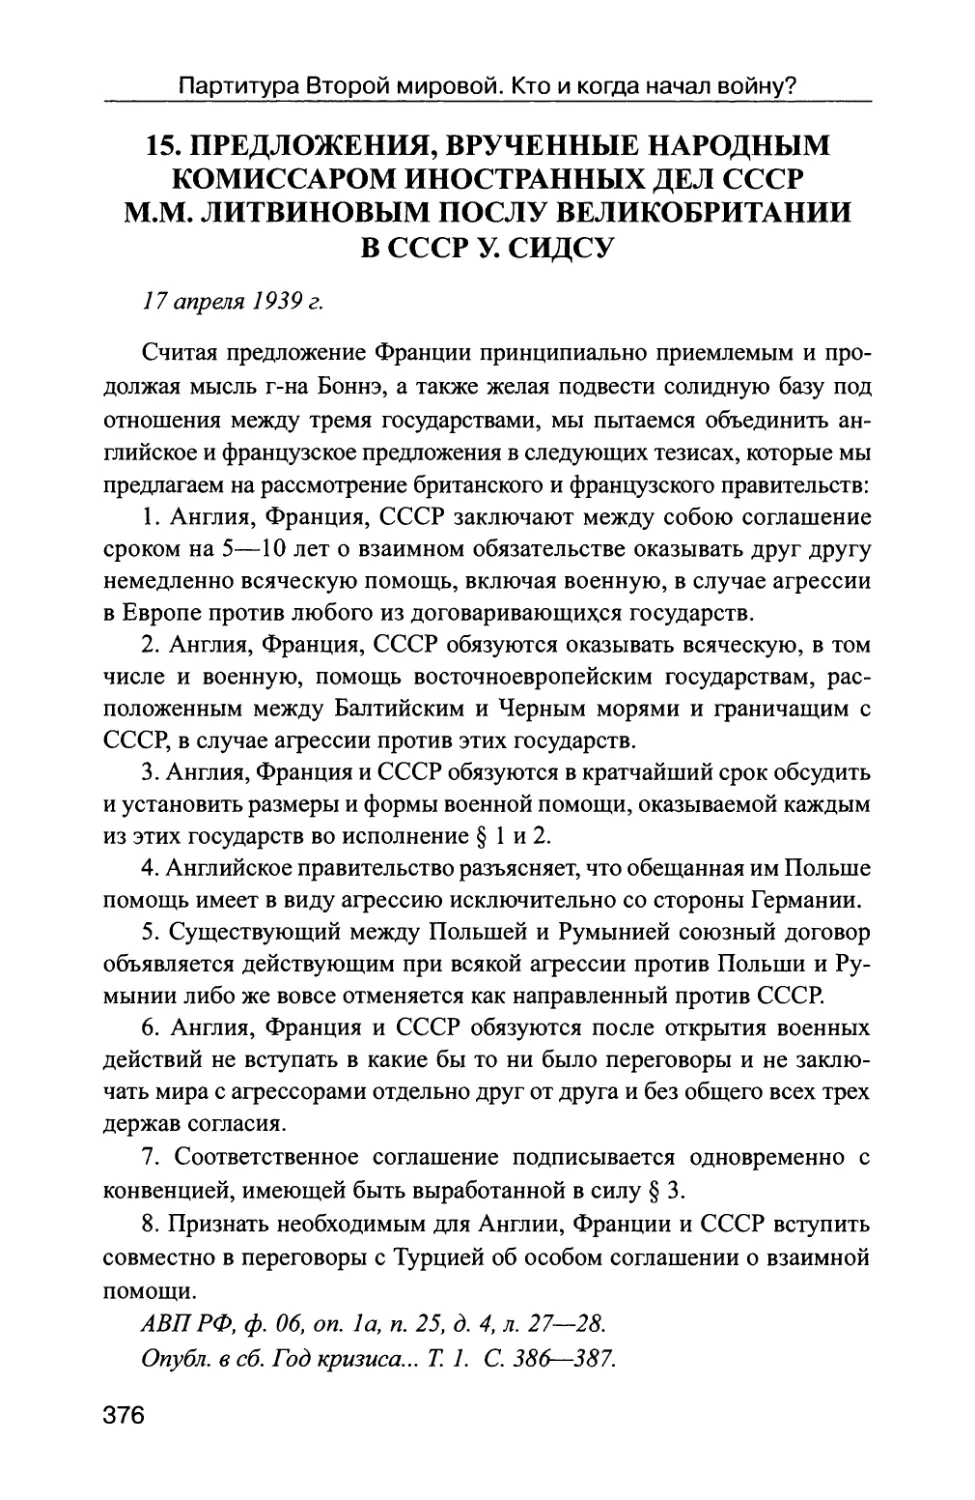 Предложения, врученные народным комиссаром иностранных дел СССР М.М. Литвиновым послу Великобритании в СССР У. Сидсу 17 апреля 1939 г